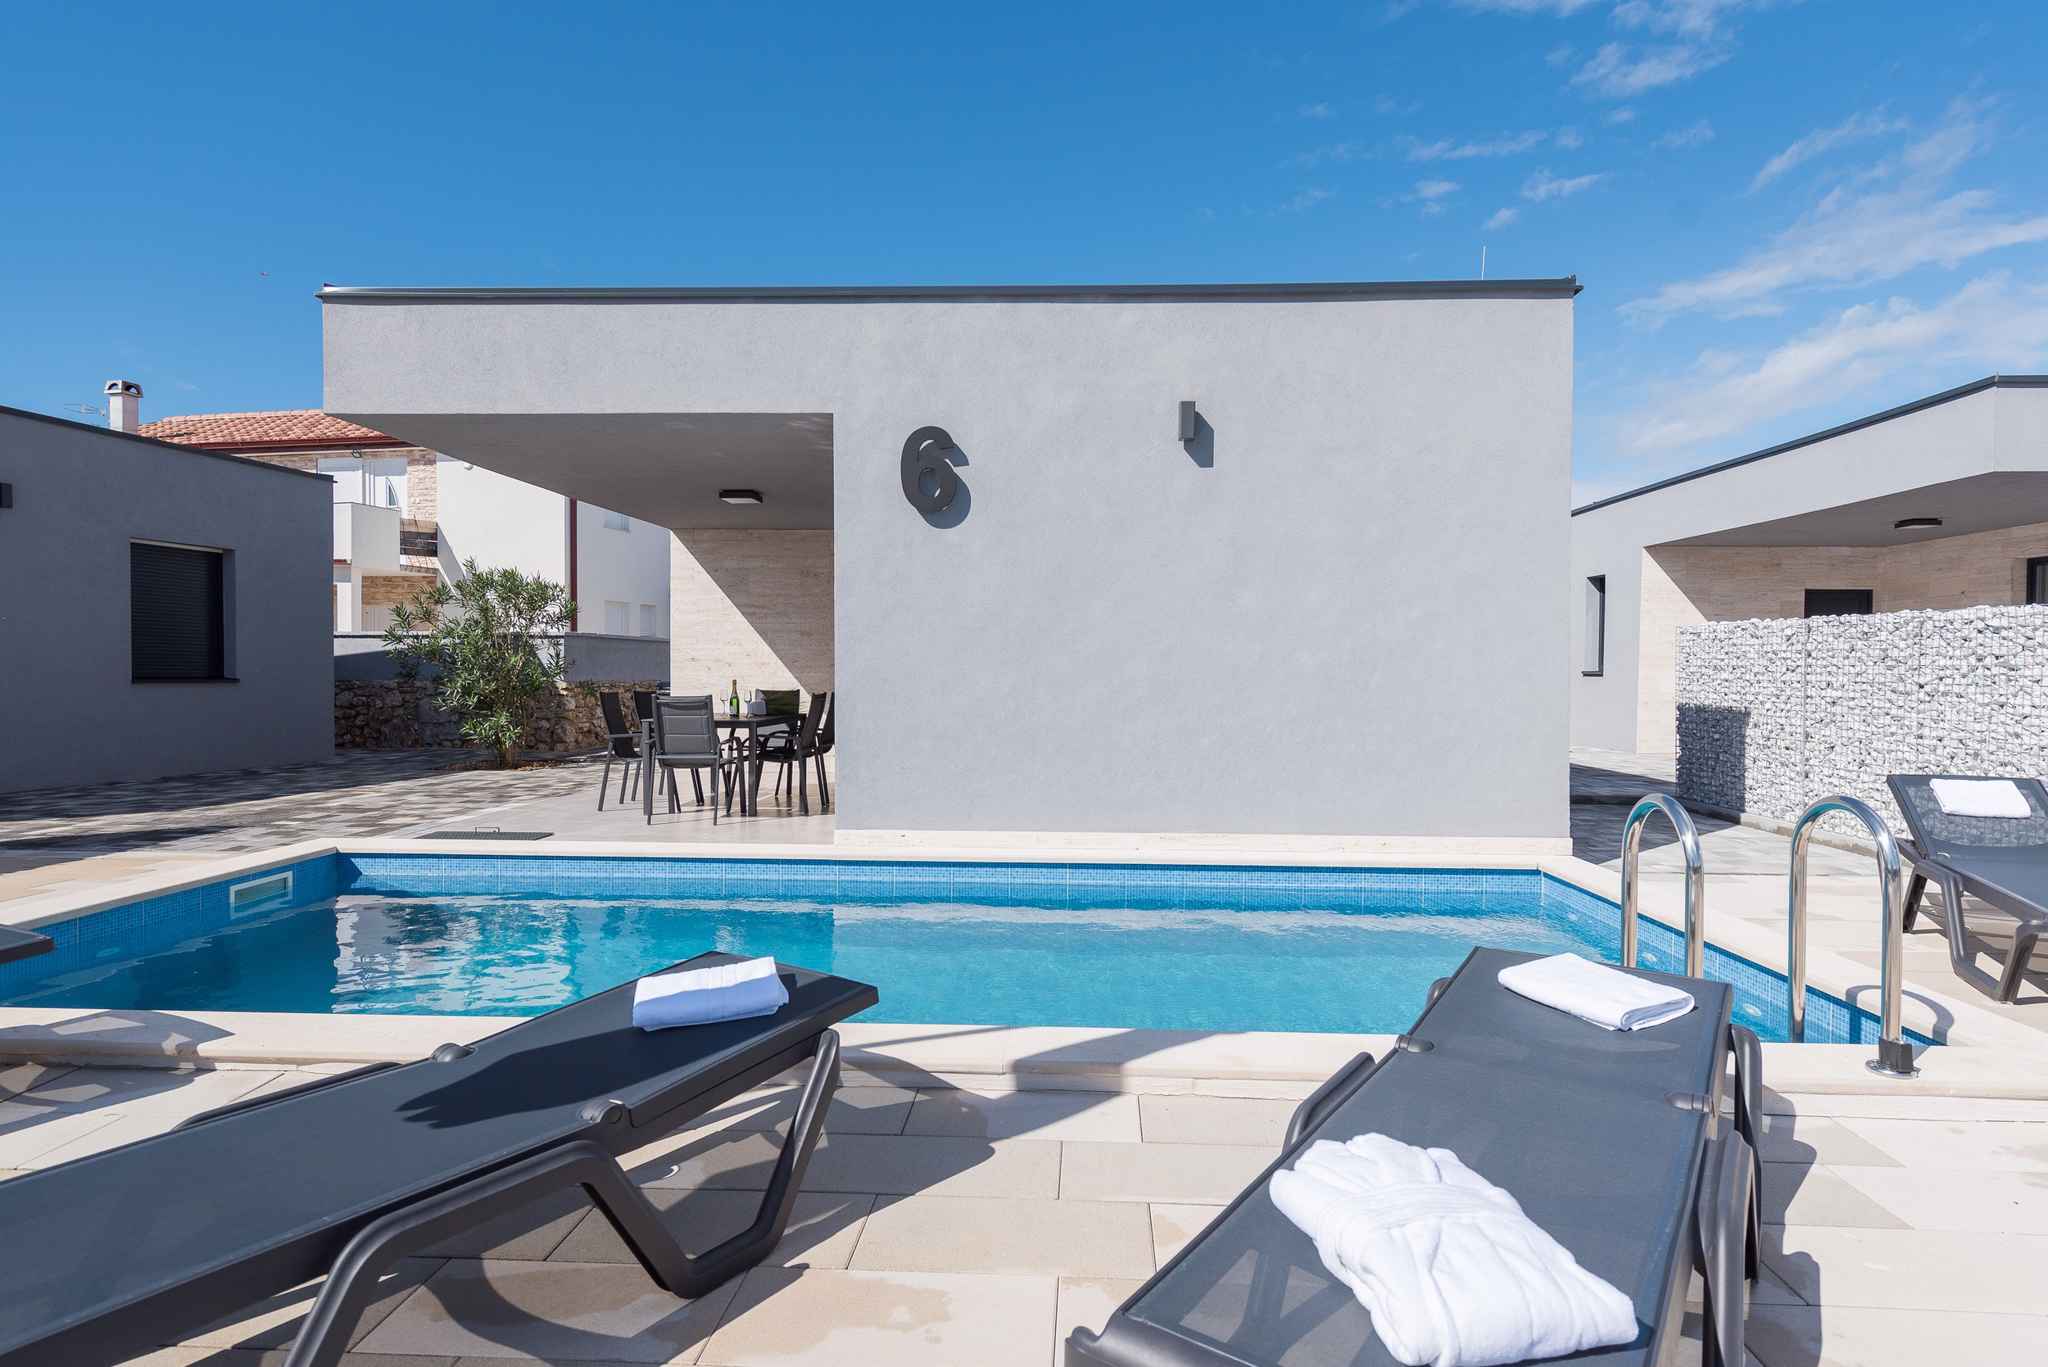 Villa mit Pool für 4-6 Personen in einem Luxu Ferienhaus in Kroatien